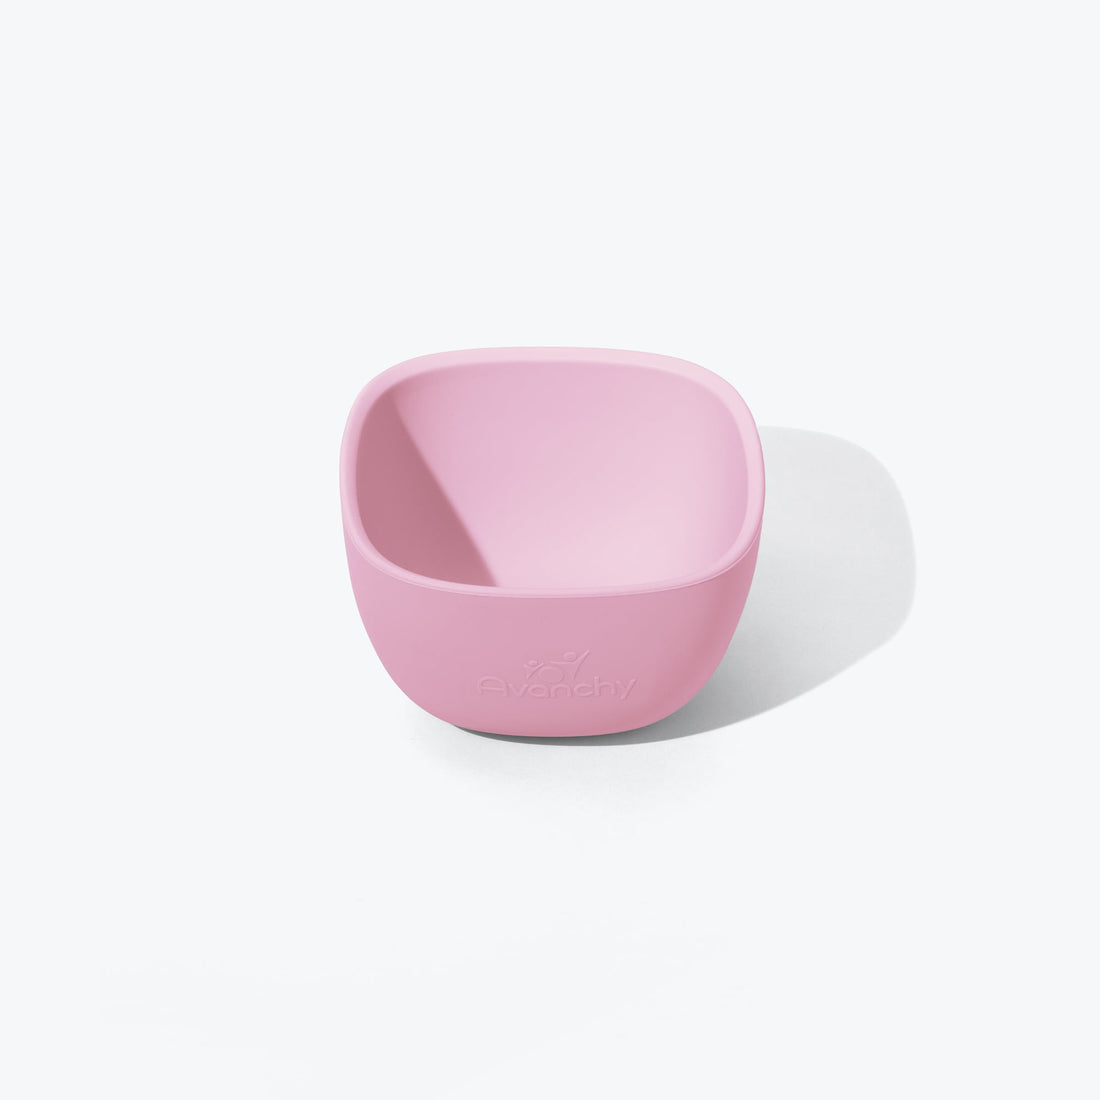 avanchy-la-petite-silicone-mini-bowl-pink-avan-mislpbbl-01514- (1)